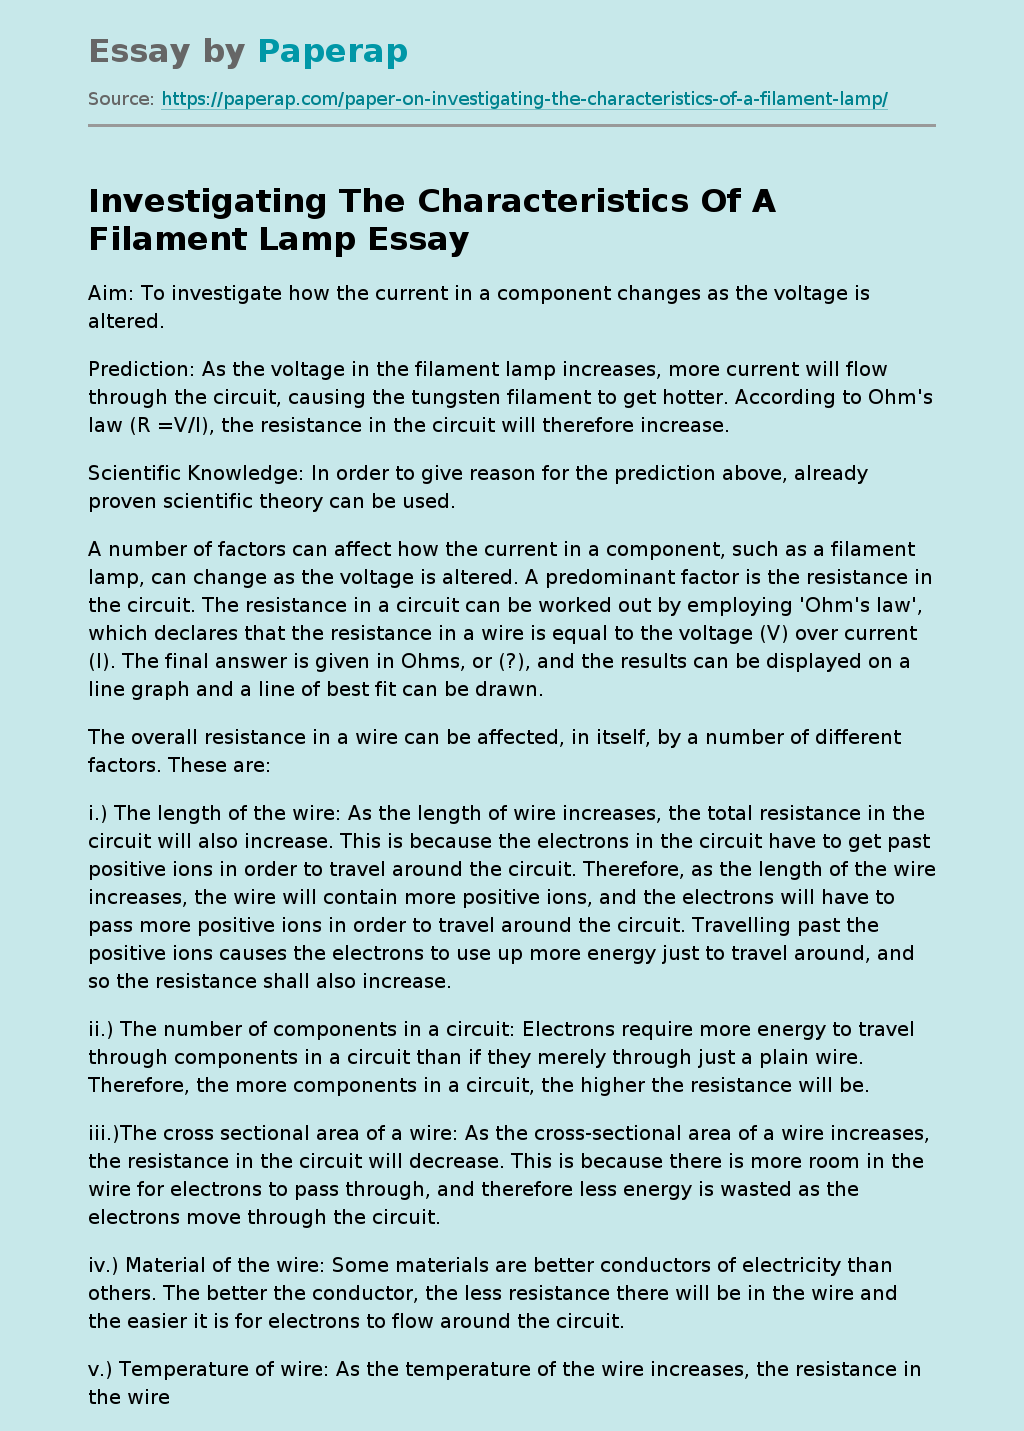 Investigating The Characteristics Of A Filament Lamp